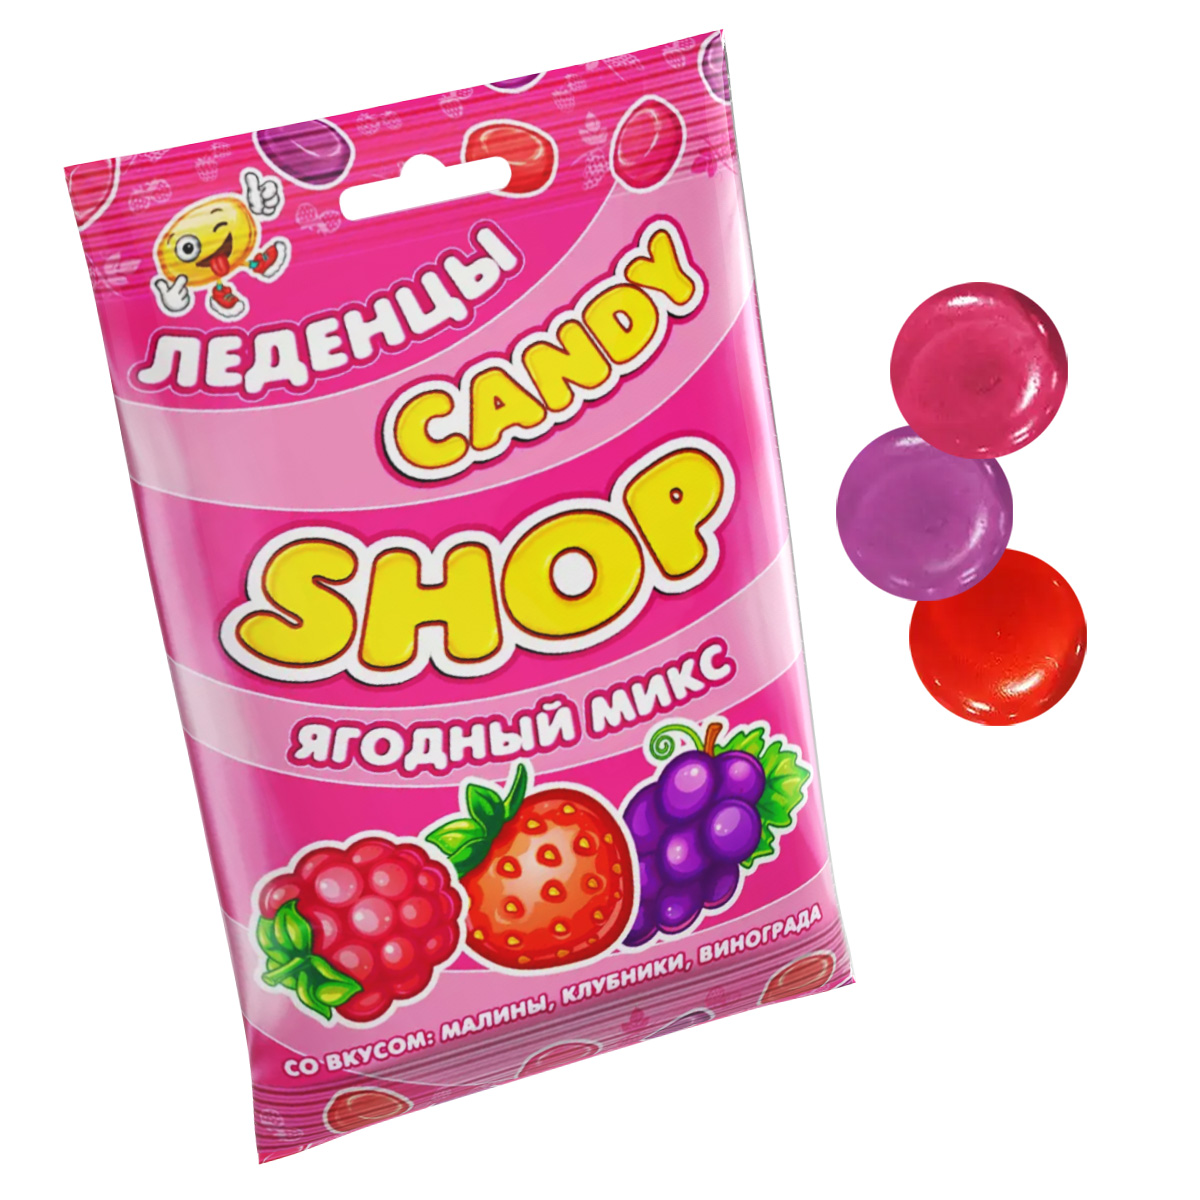 Карамель леденцовая Candy Shop Ягодный Микс, 1 штх 80 г